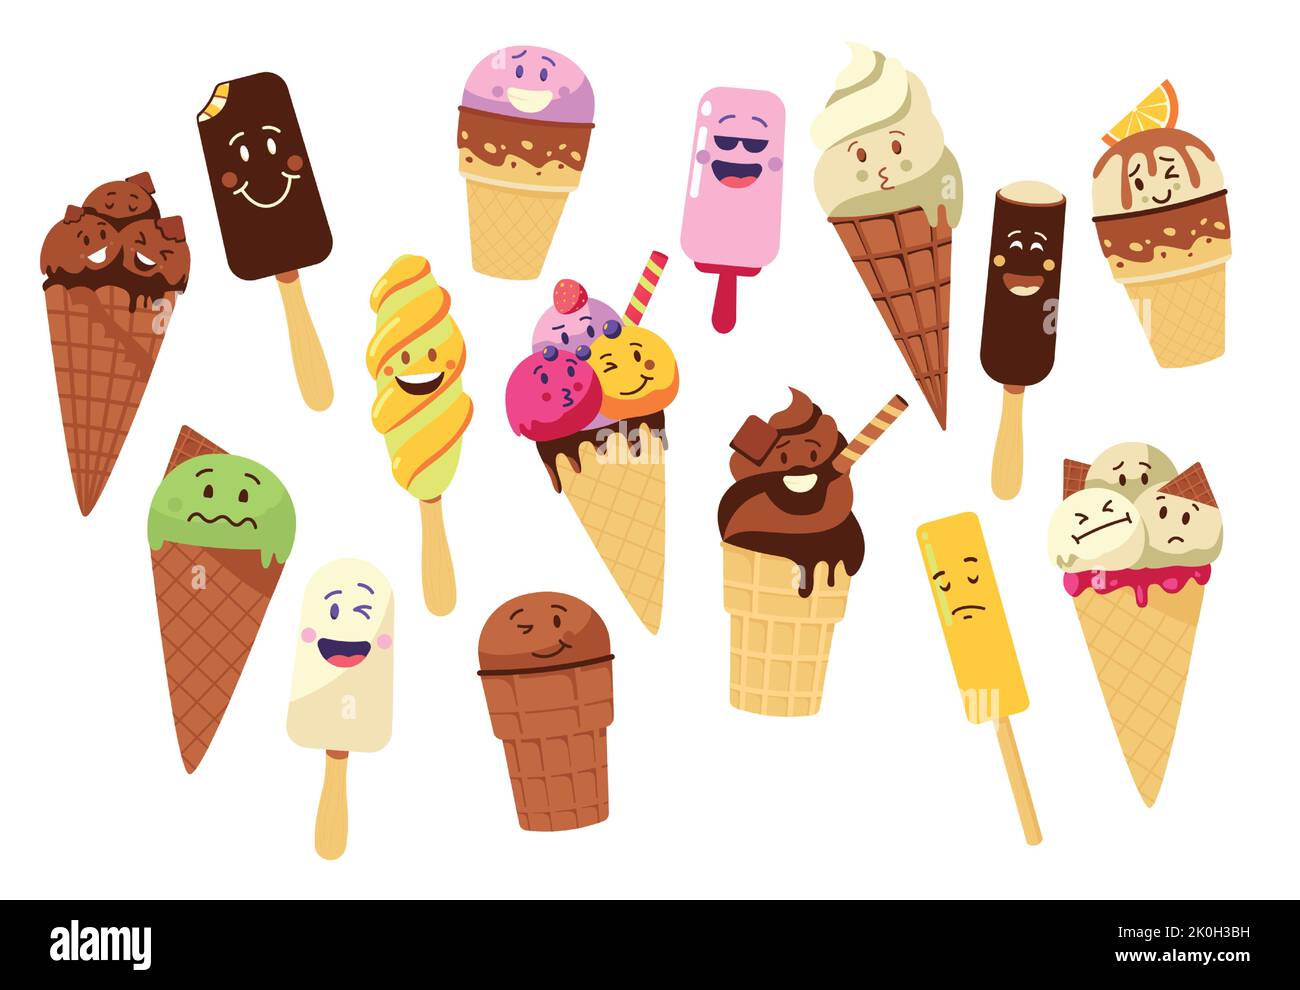 Eiscreme-Charakter. Cartoon-Eis-Pops und gefrorenes Fruchteis isoliert Maskottchen-Symbole mit niedlichen kawaii Gesichter und glücklichen Ausdruck. Farbenfrohes Vektorset Stock Vektor